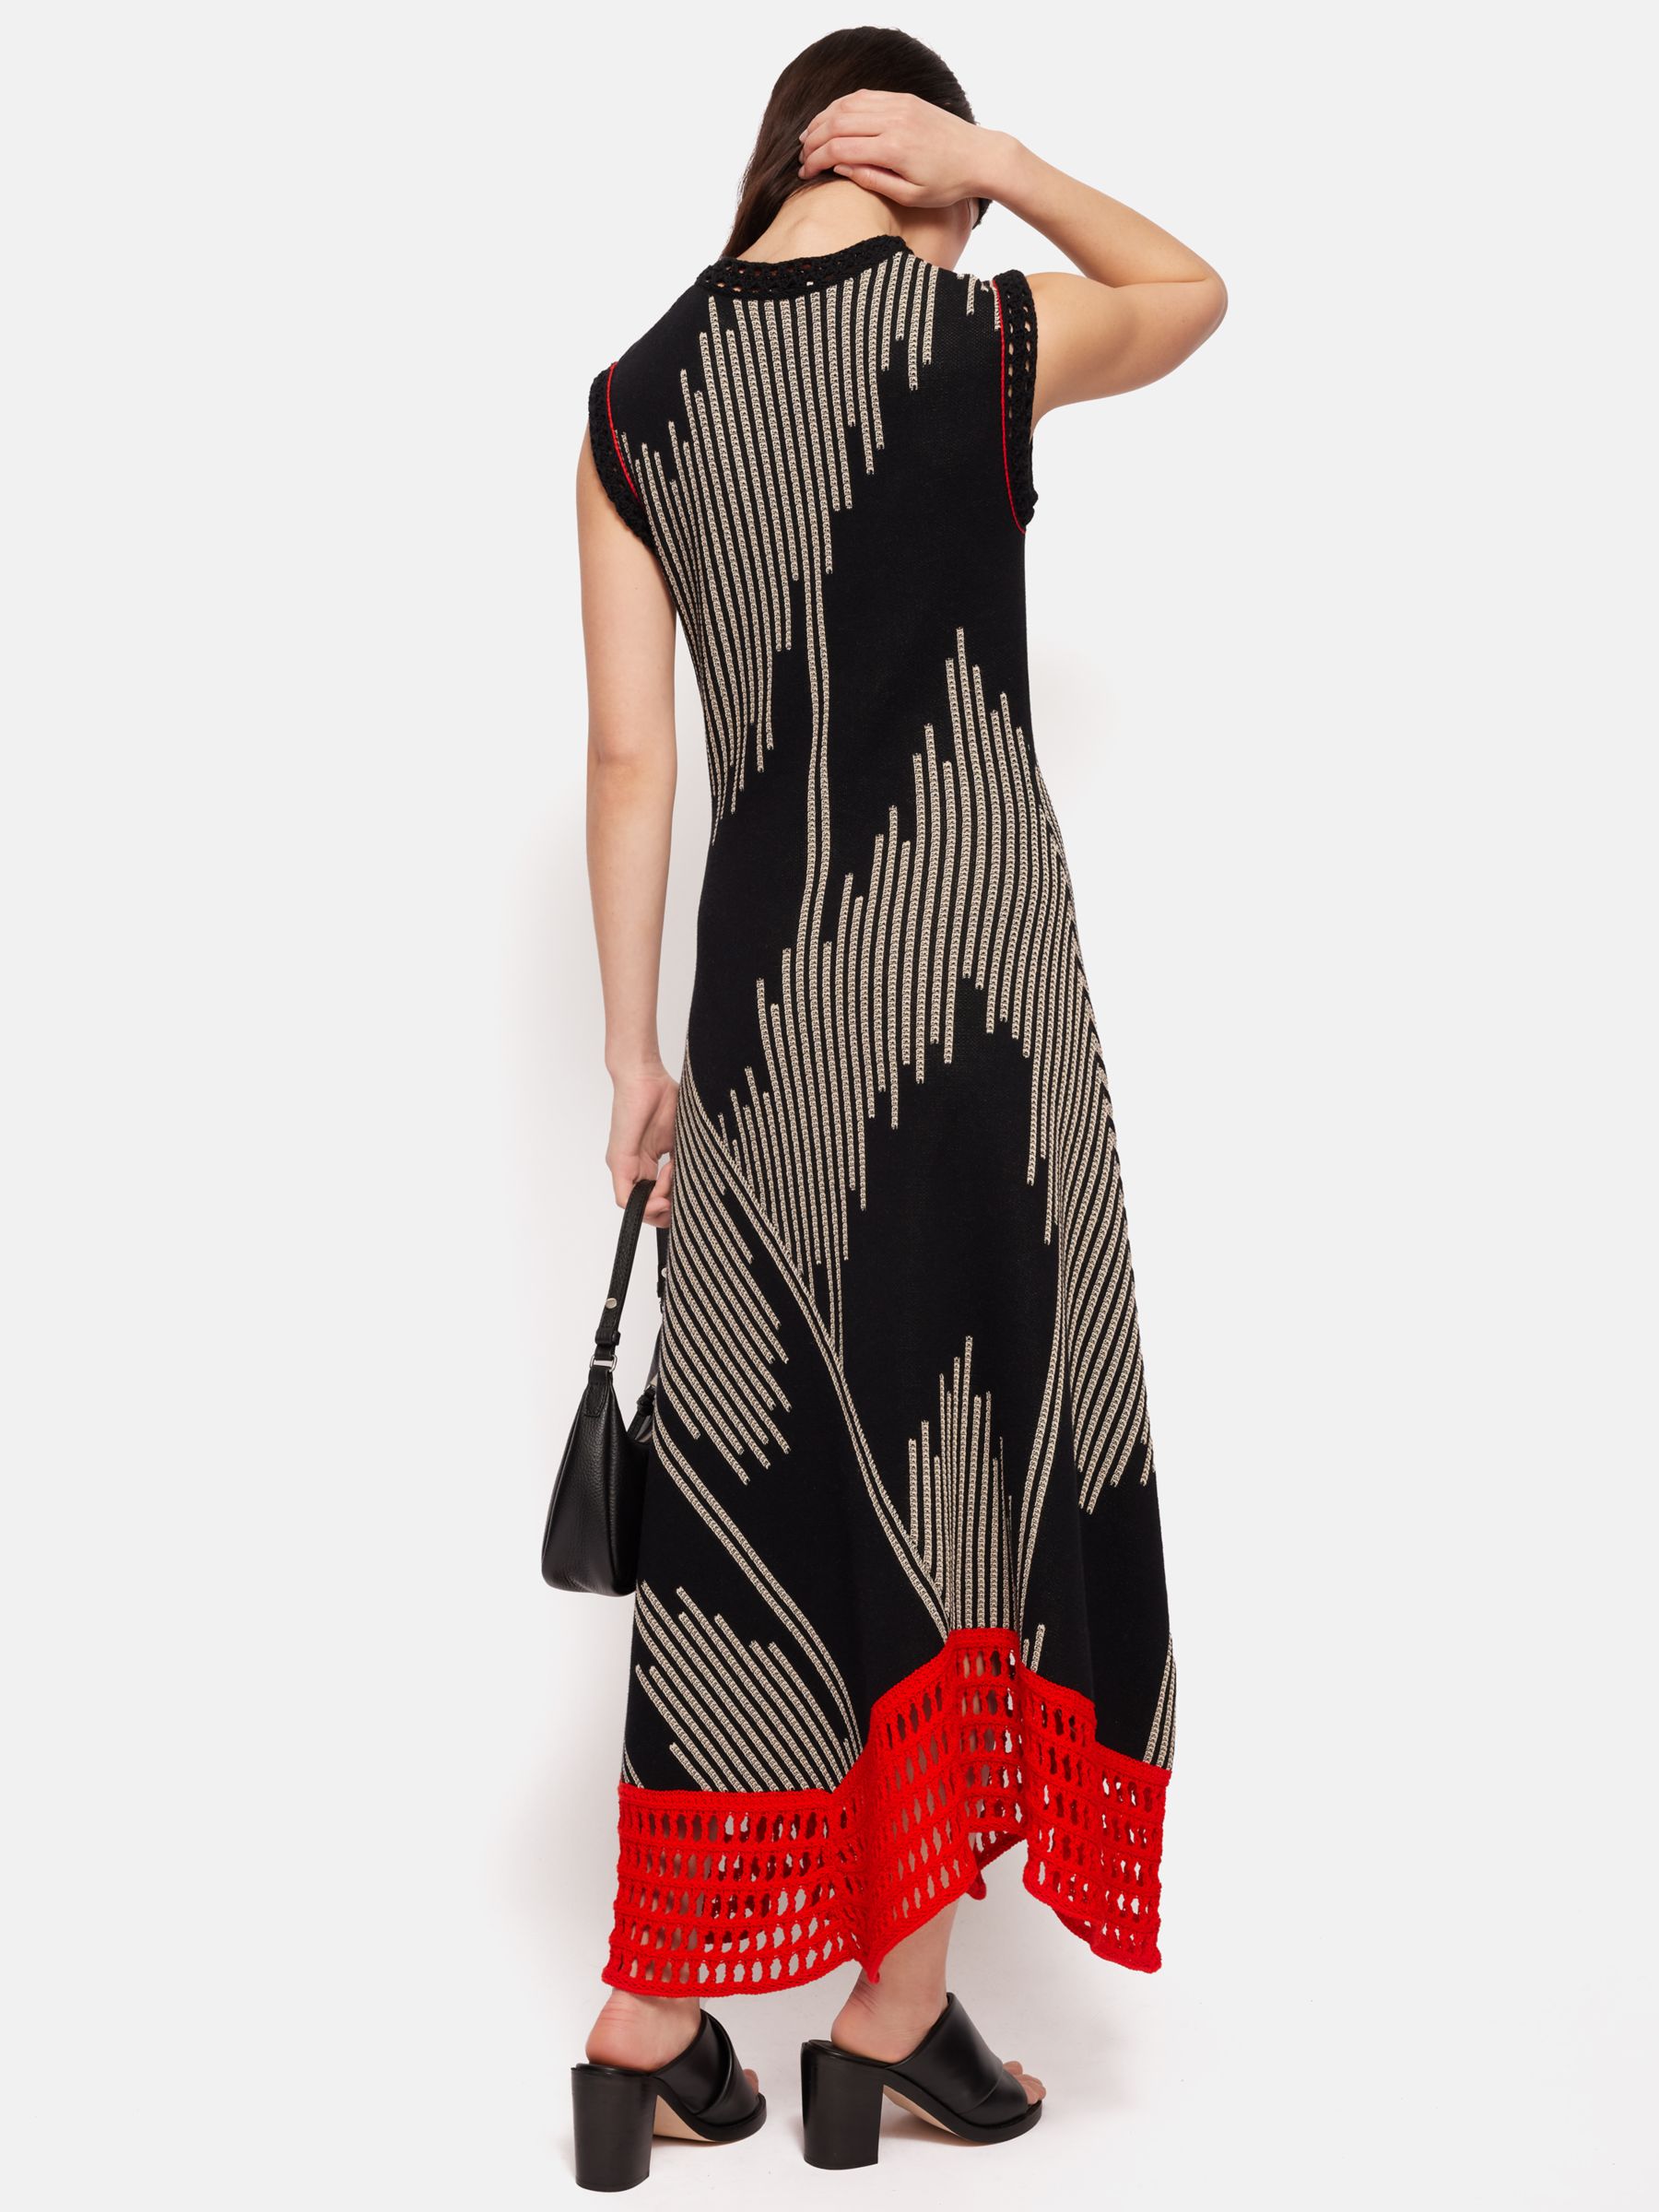 Jigsaw Ikat Jacquard Knit Maxi Dress, Black/Multi, XS